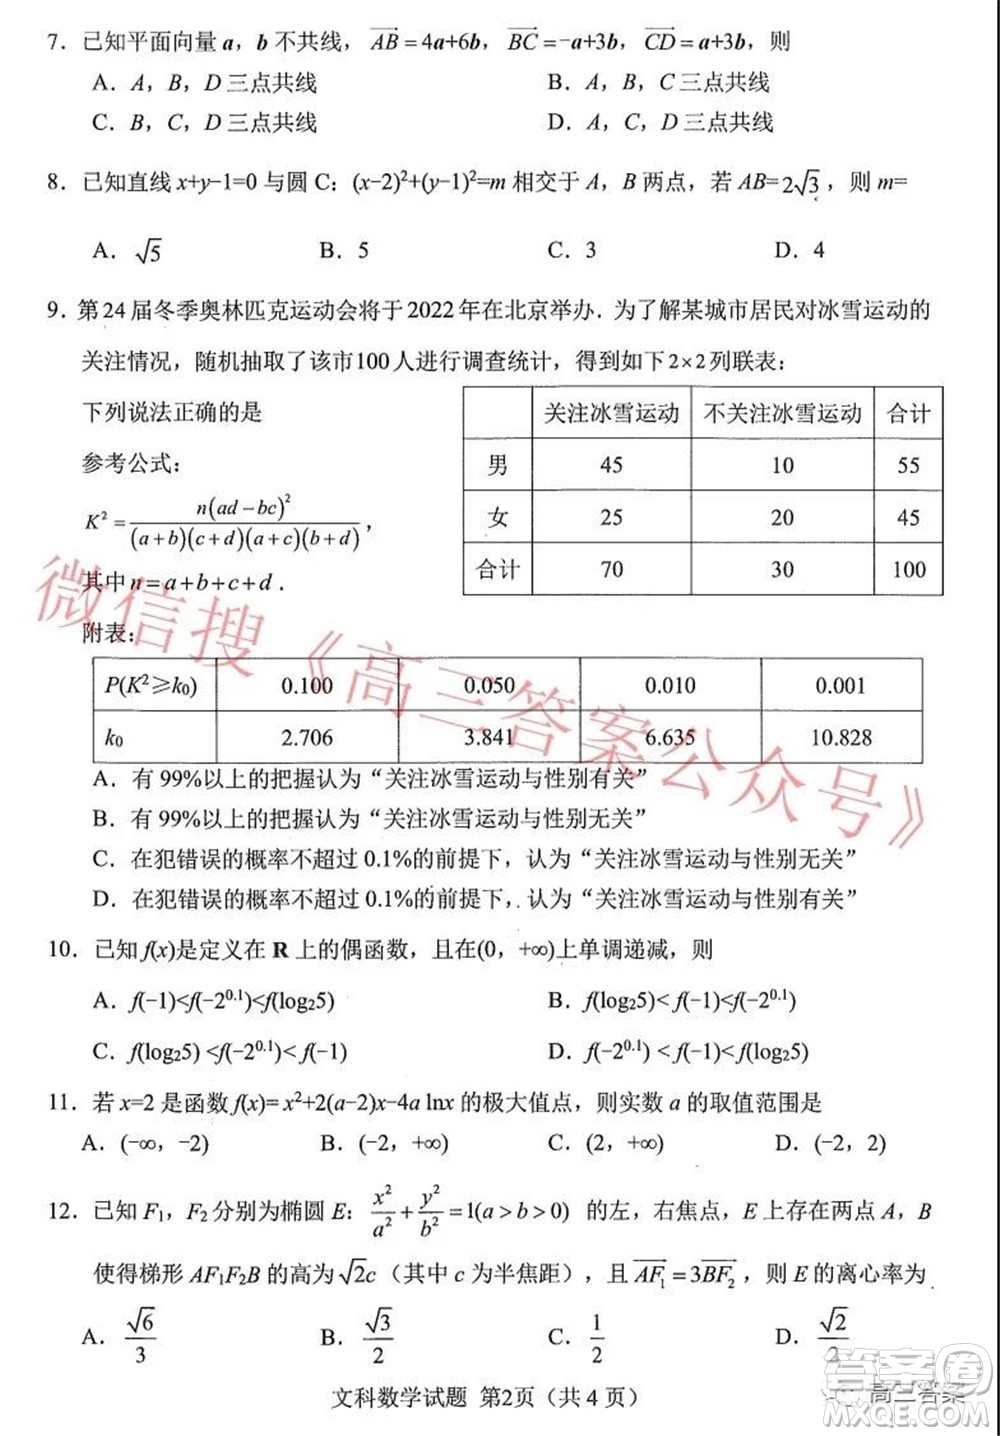 绵阳市高中2019级第二次诊断性考试文科数学试题及答案